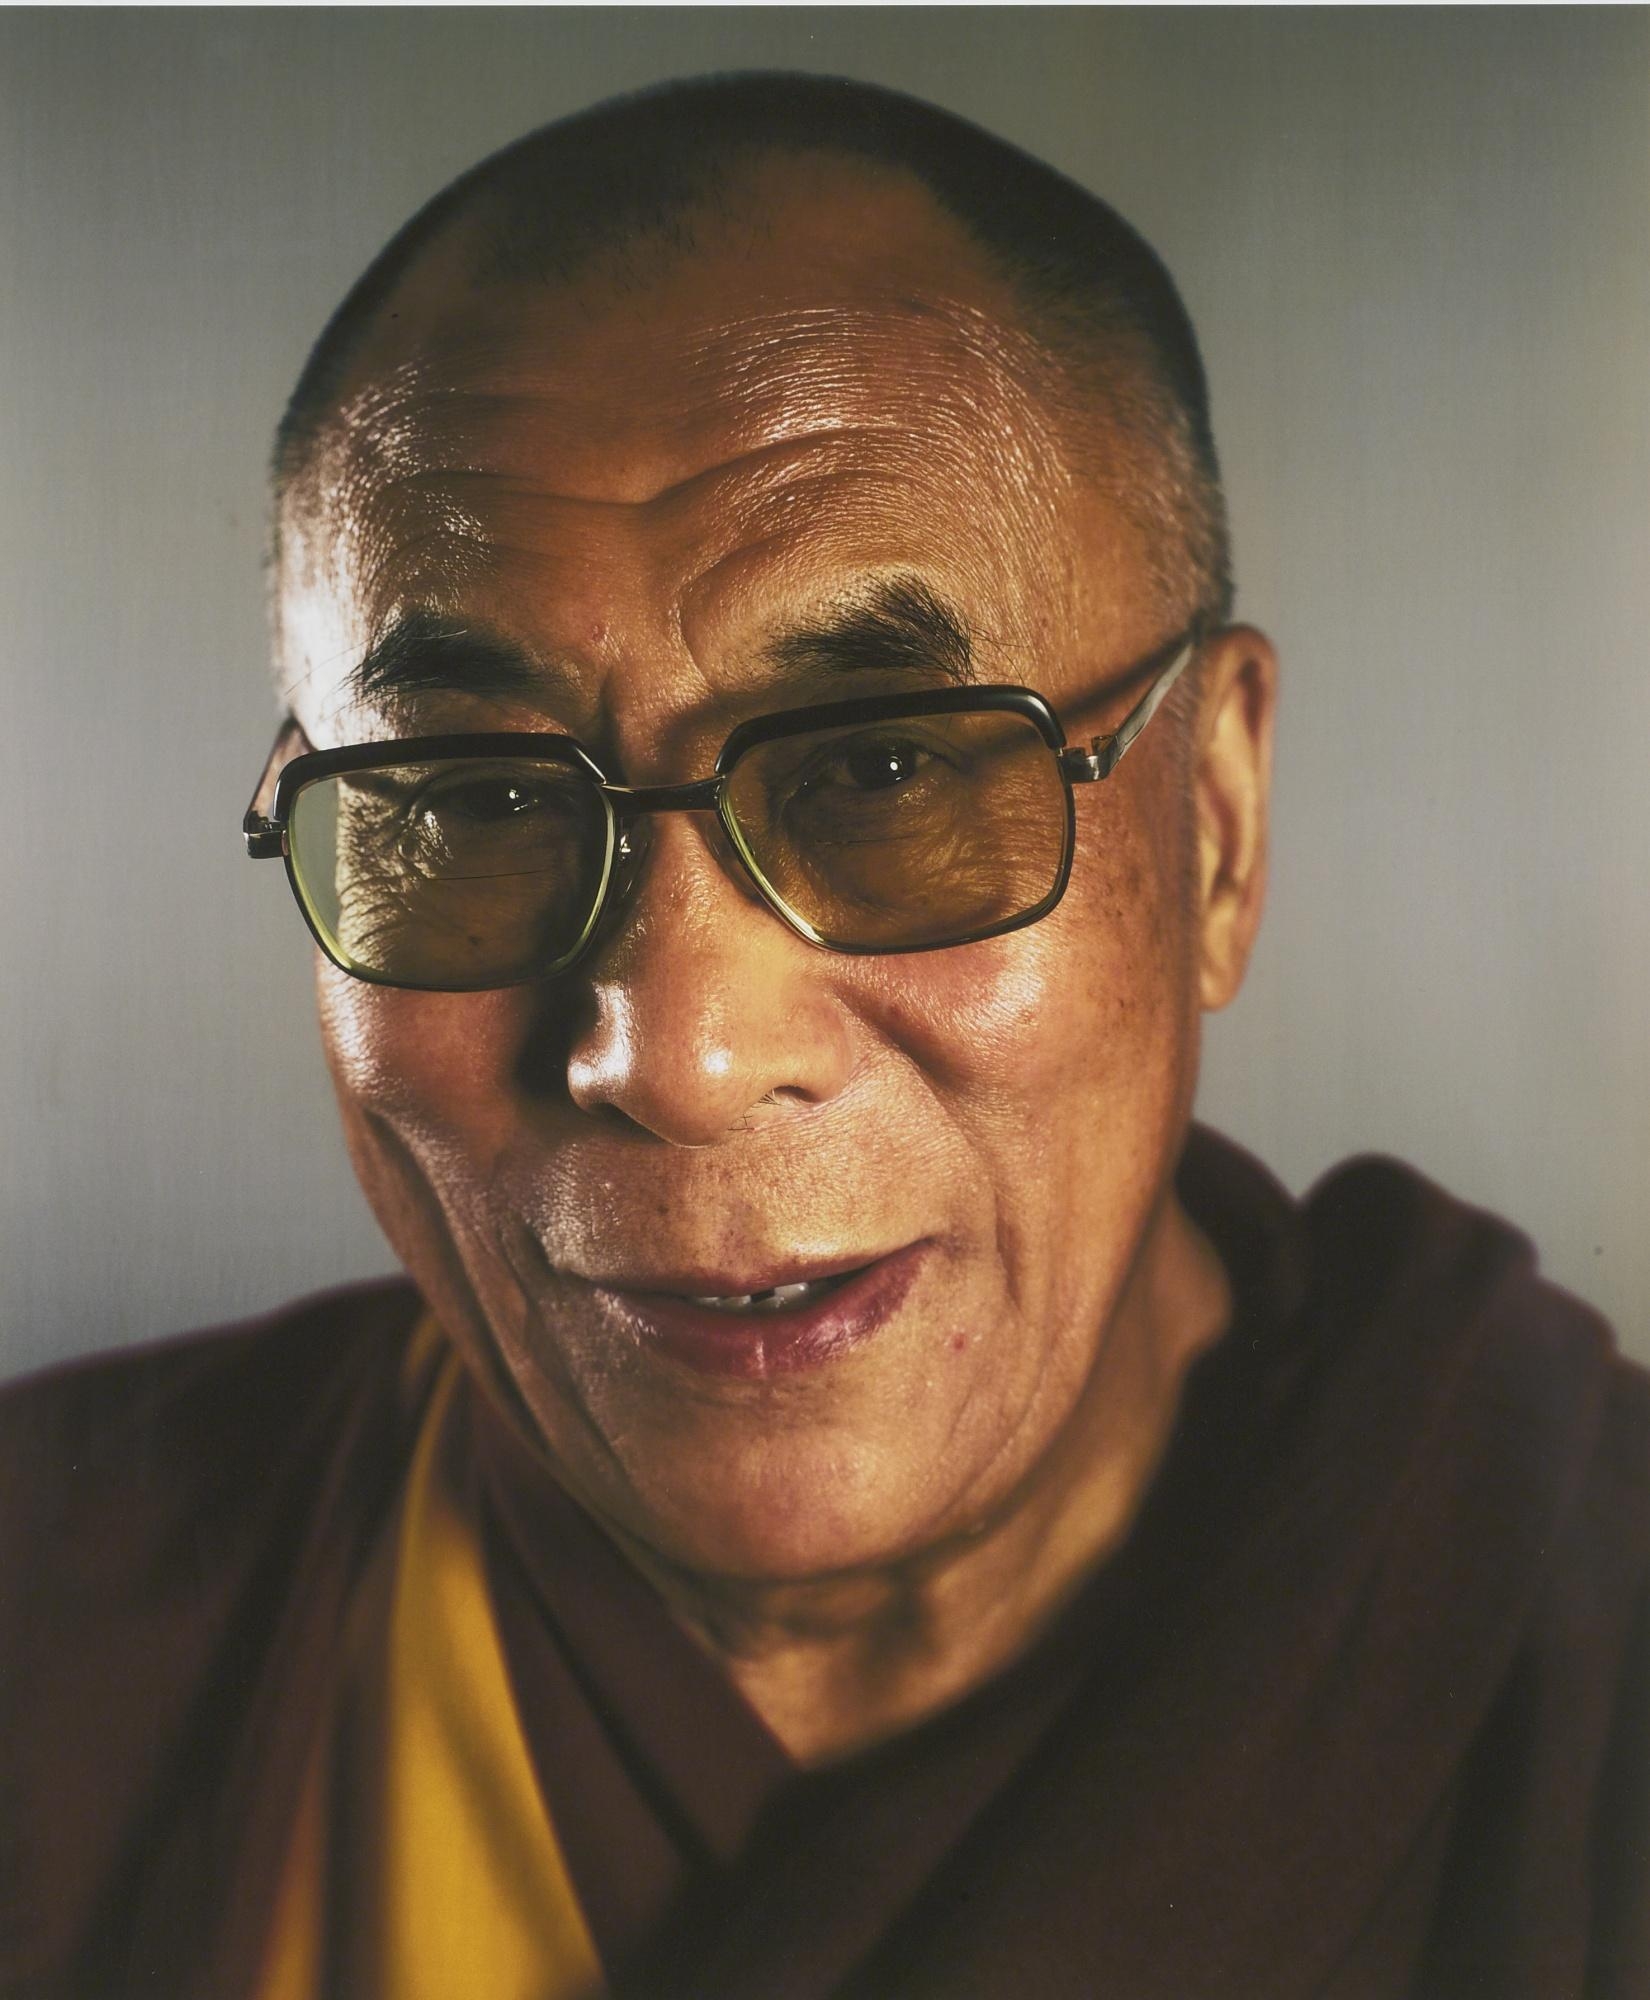 Dalai Lama by Chuck Close, 2005